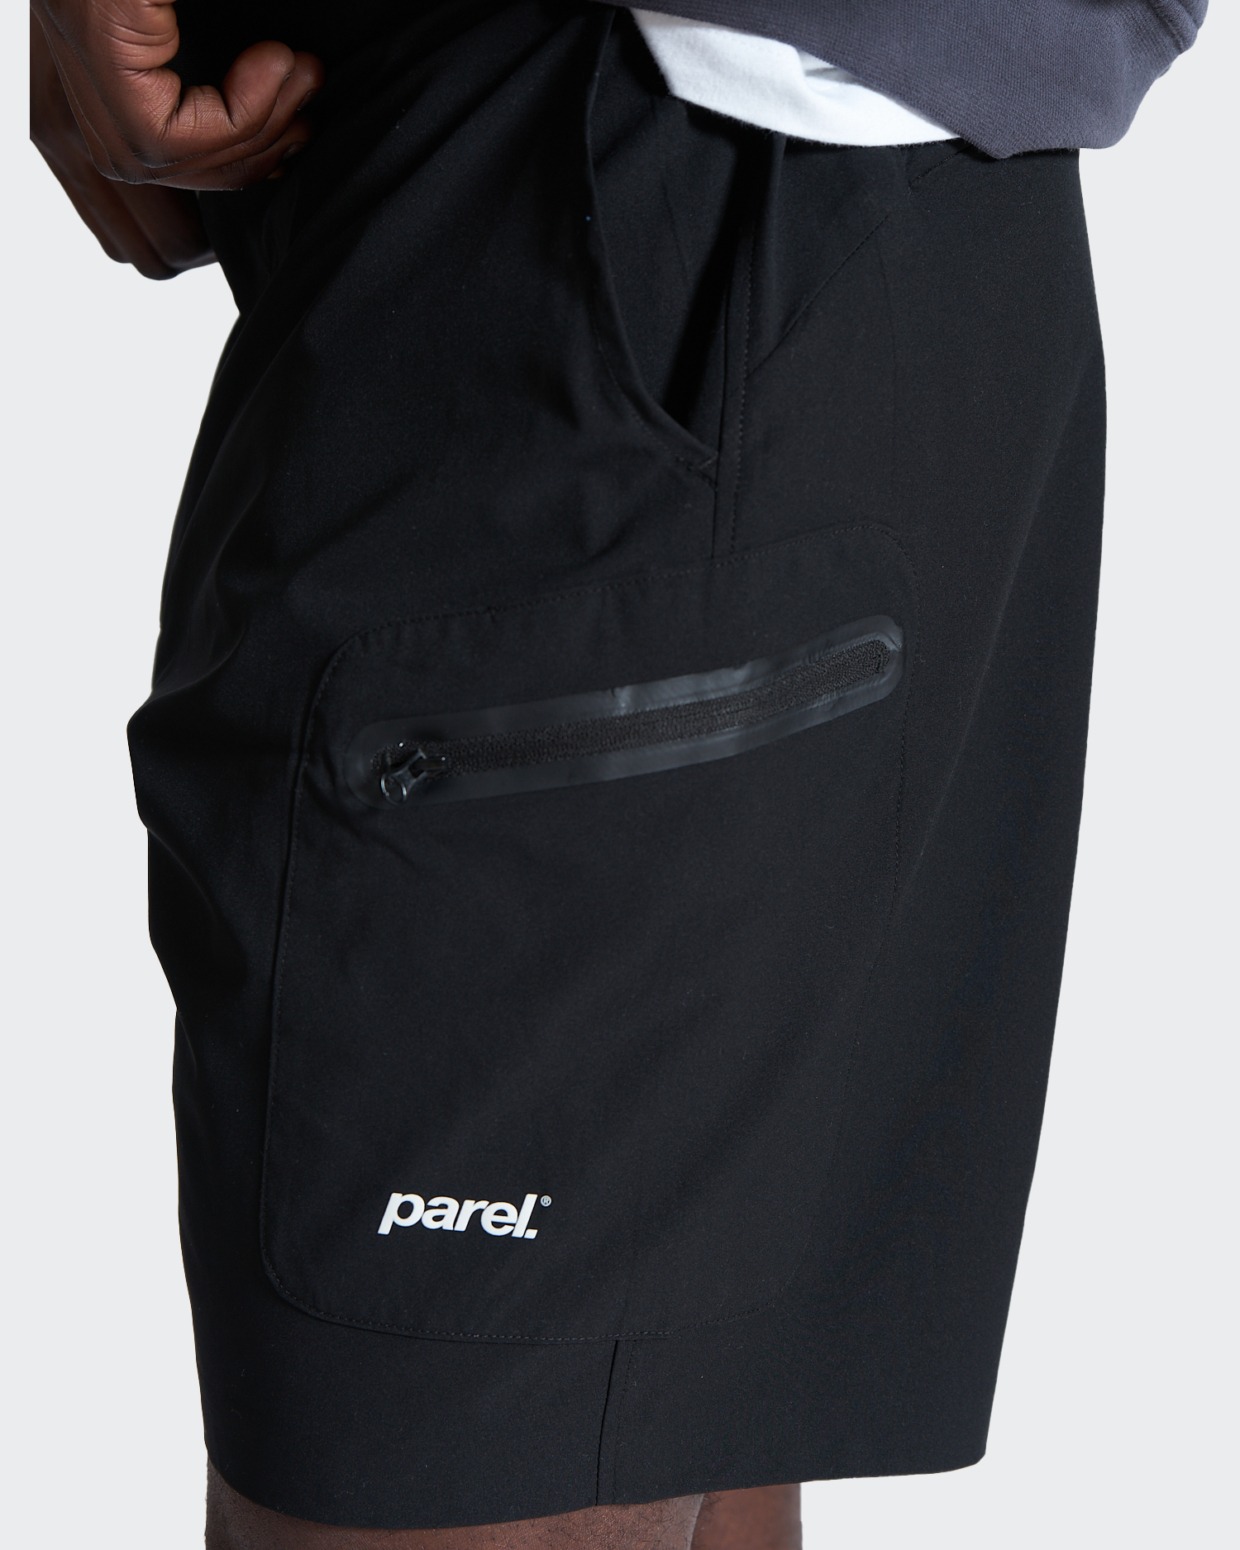 Parel Pico Shorts